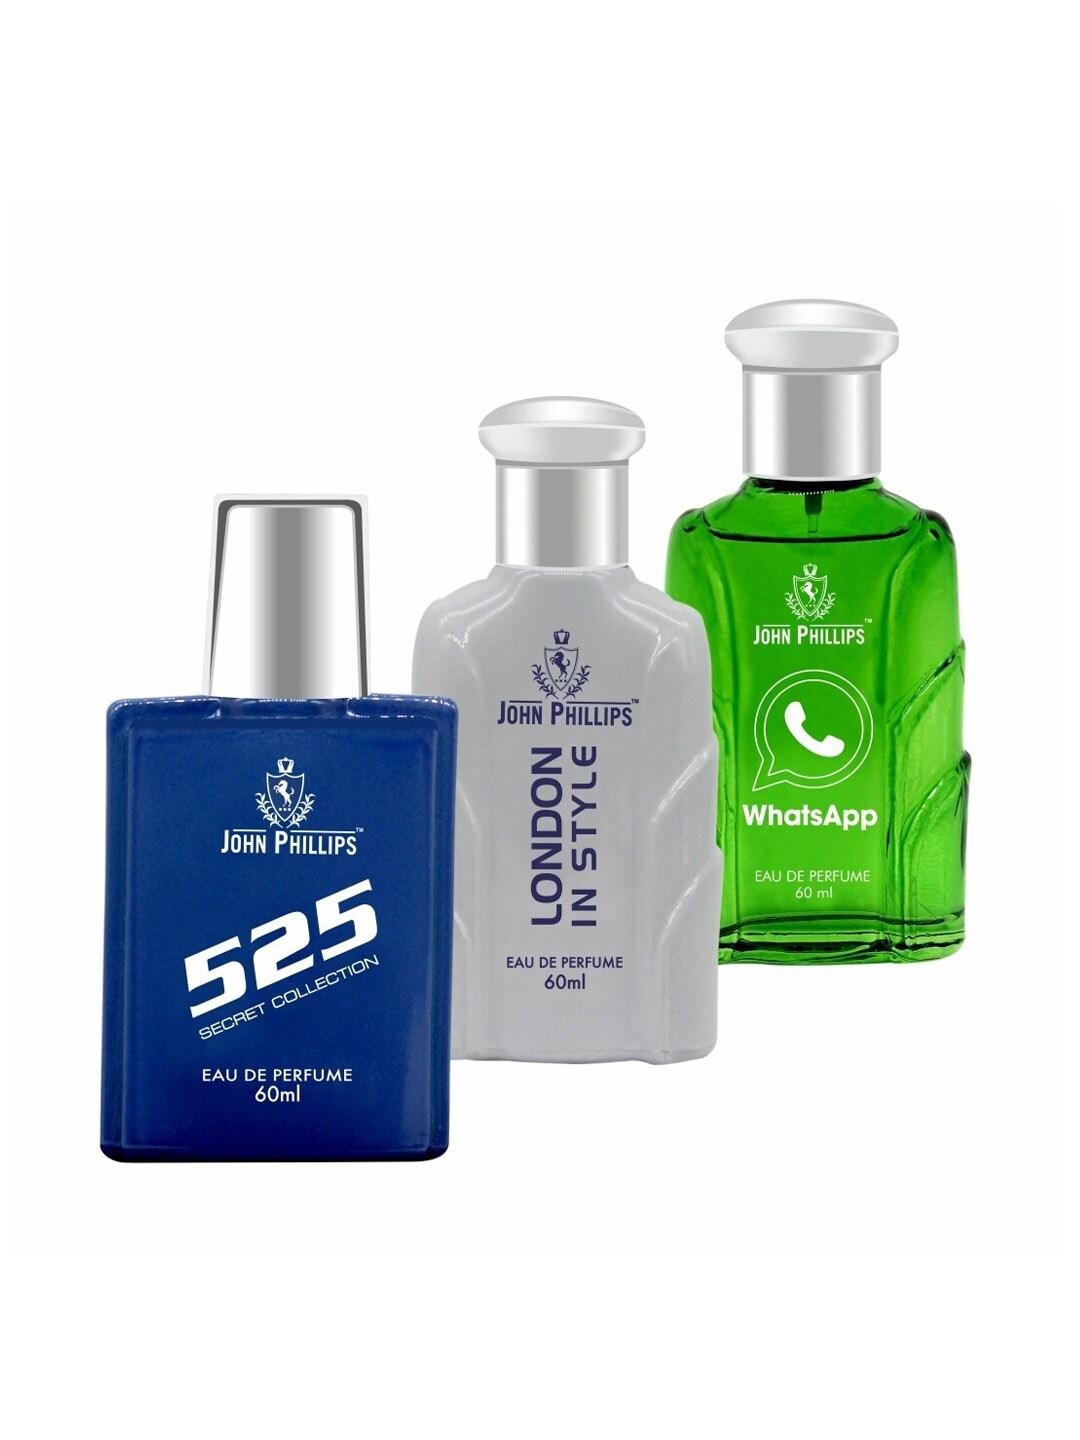 JOHN PHILLIPS Set of 3 Eau De Parfum - 525 + London In Style + Whatsapp - 60ml Each